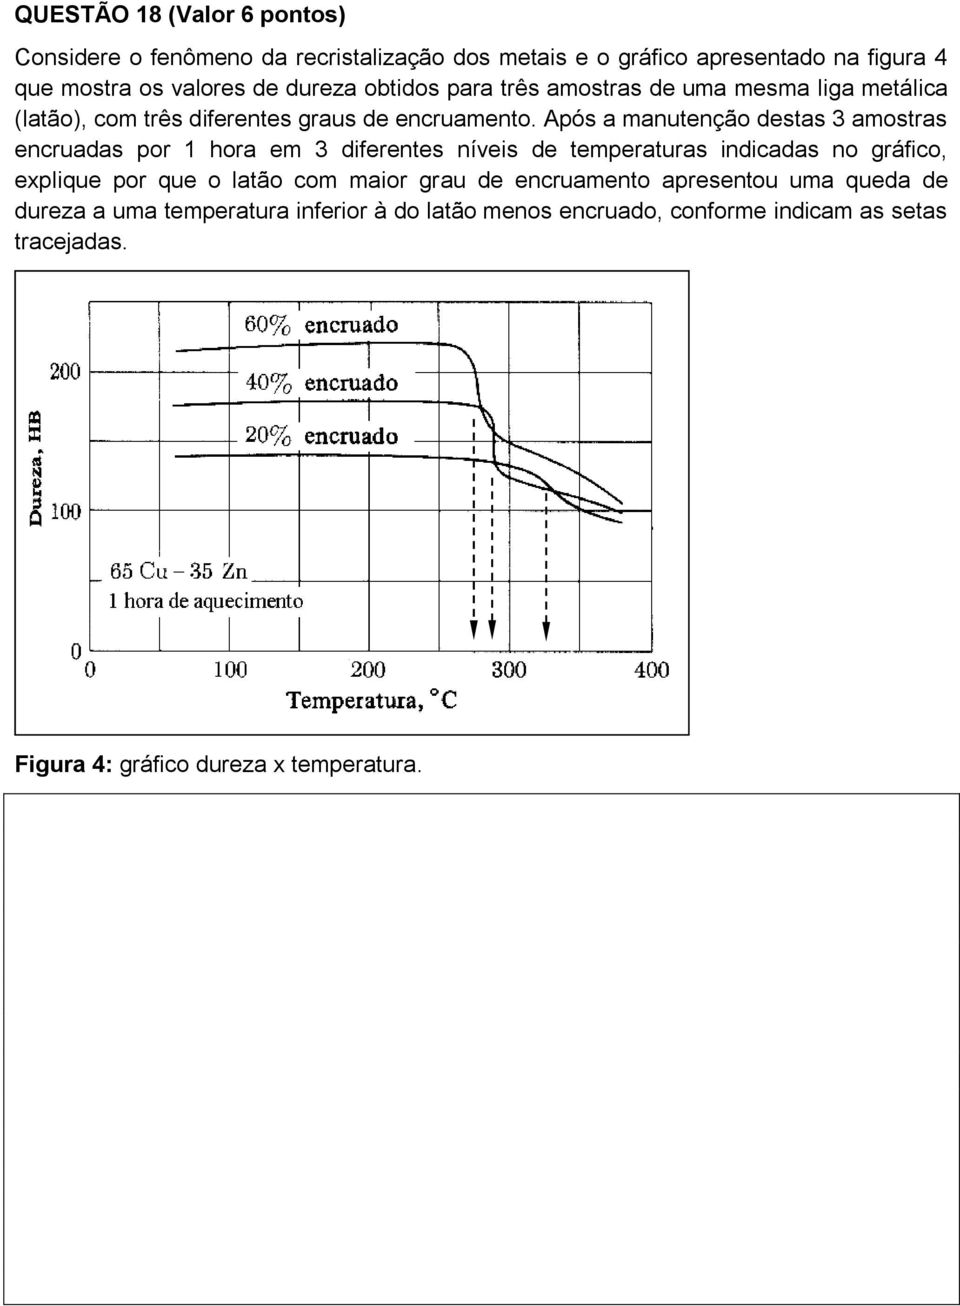 Após a manutenção destas 3 amostras encruadas por 1 hora em 3 diferentes níveis de temperaturas indicadas no gráfico, explique por que o latão com